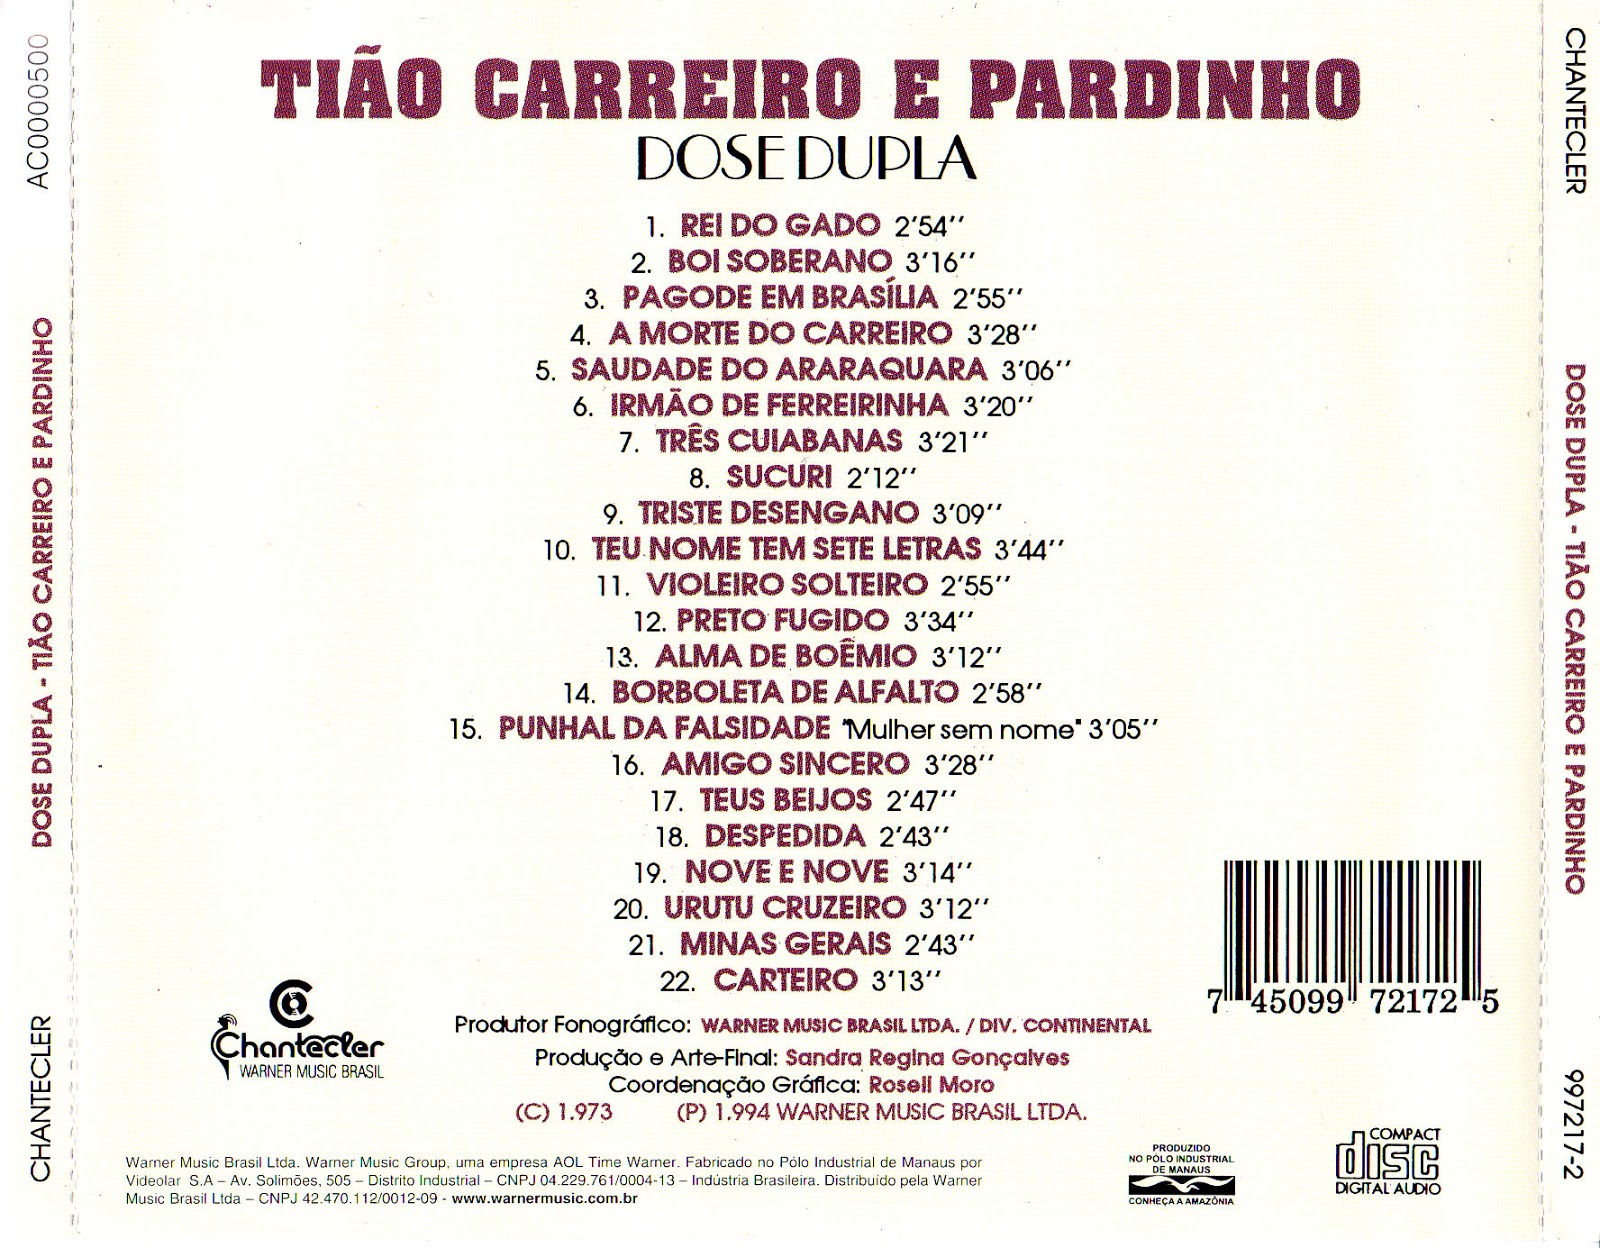 Karacasblog Tião Carreiro e Pardinho Dose Dupla Vol. 01